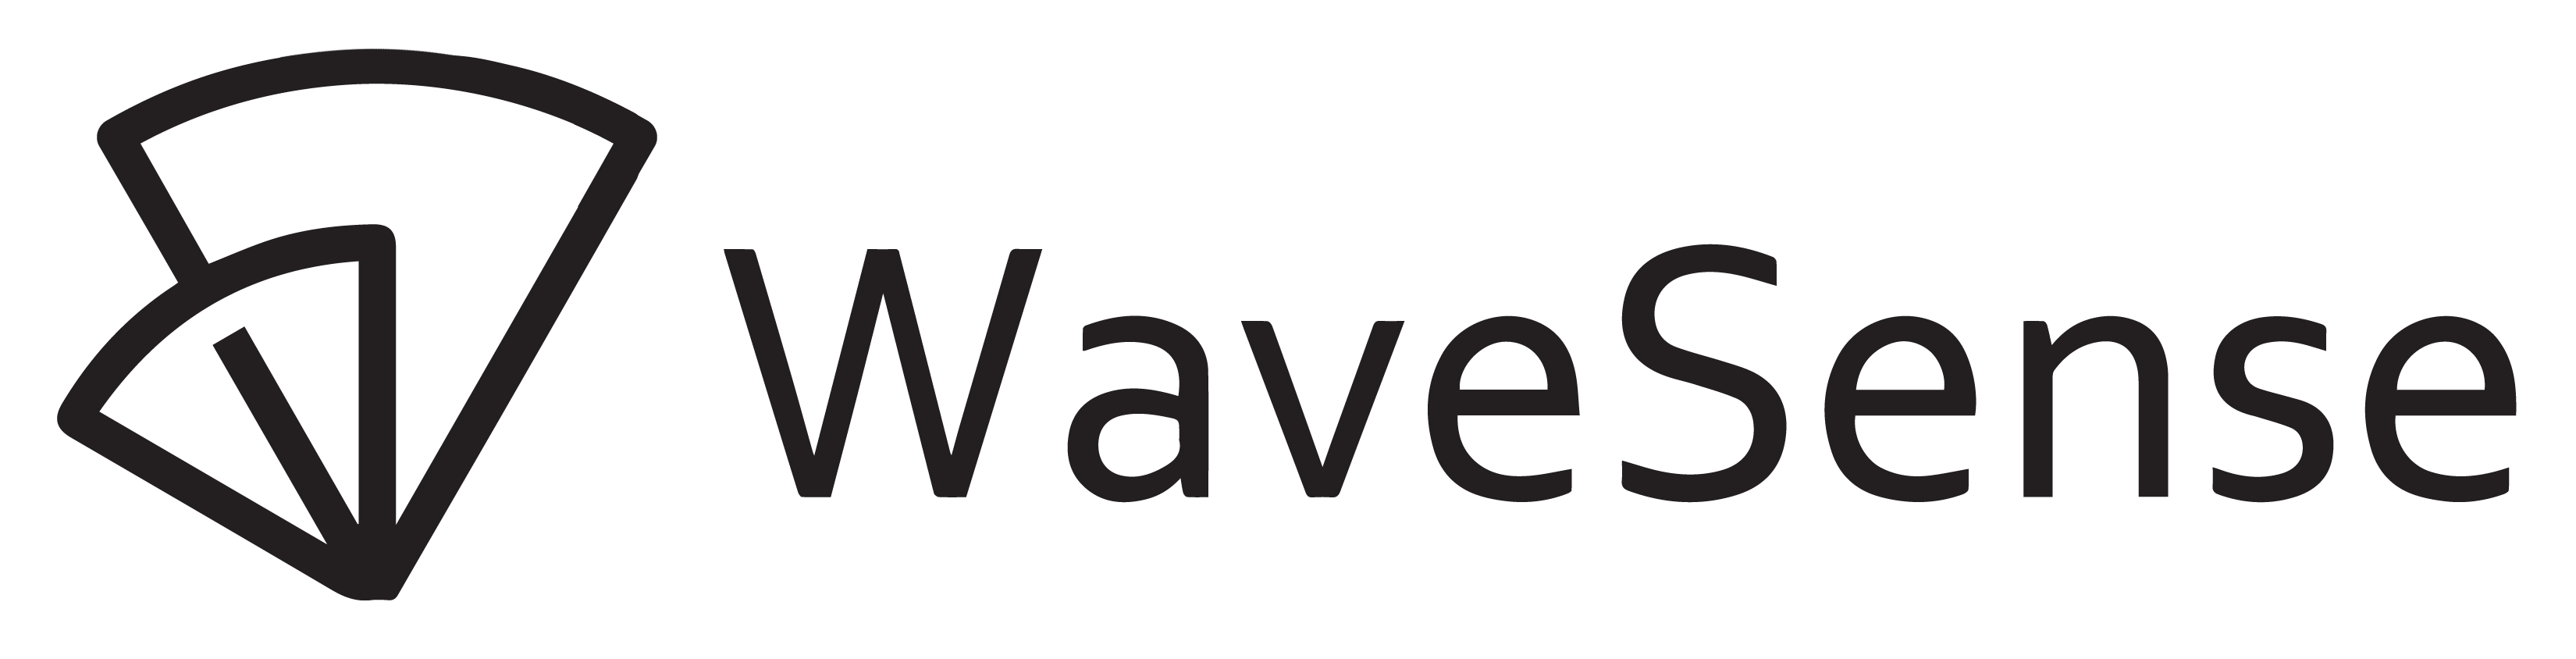 WaveSense_logo_original_black-01.png